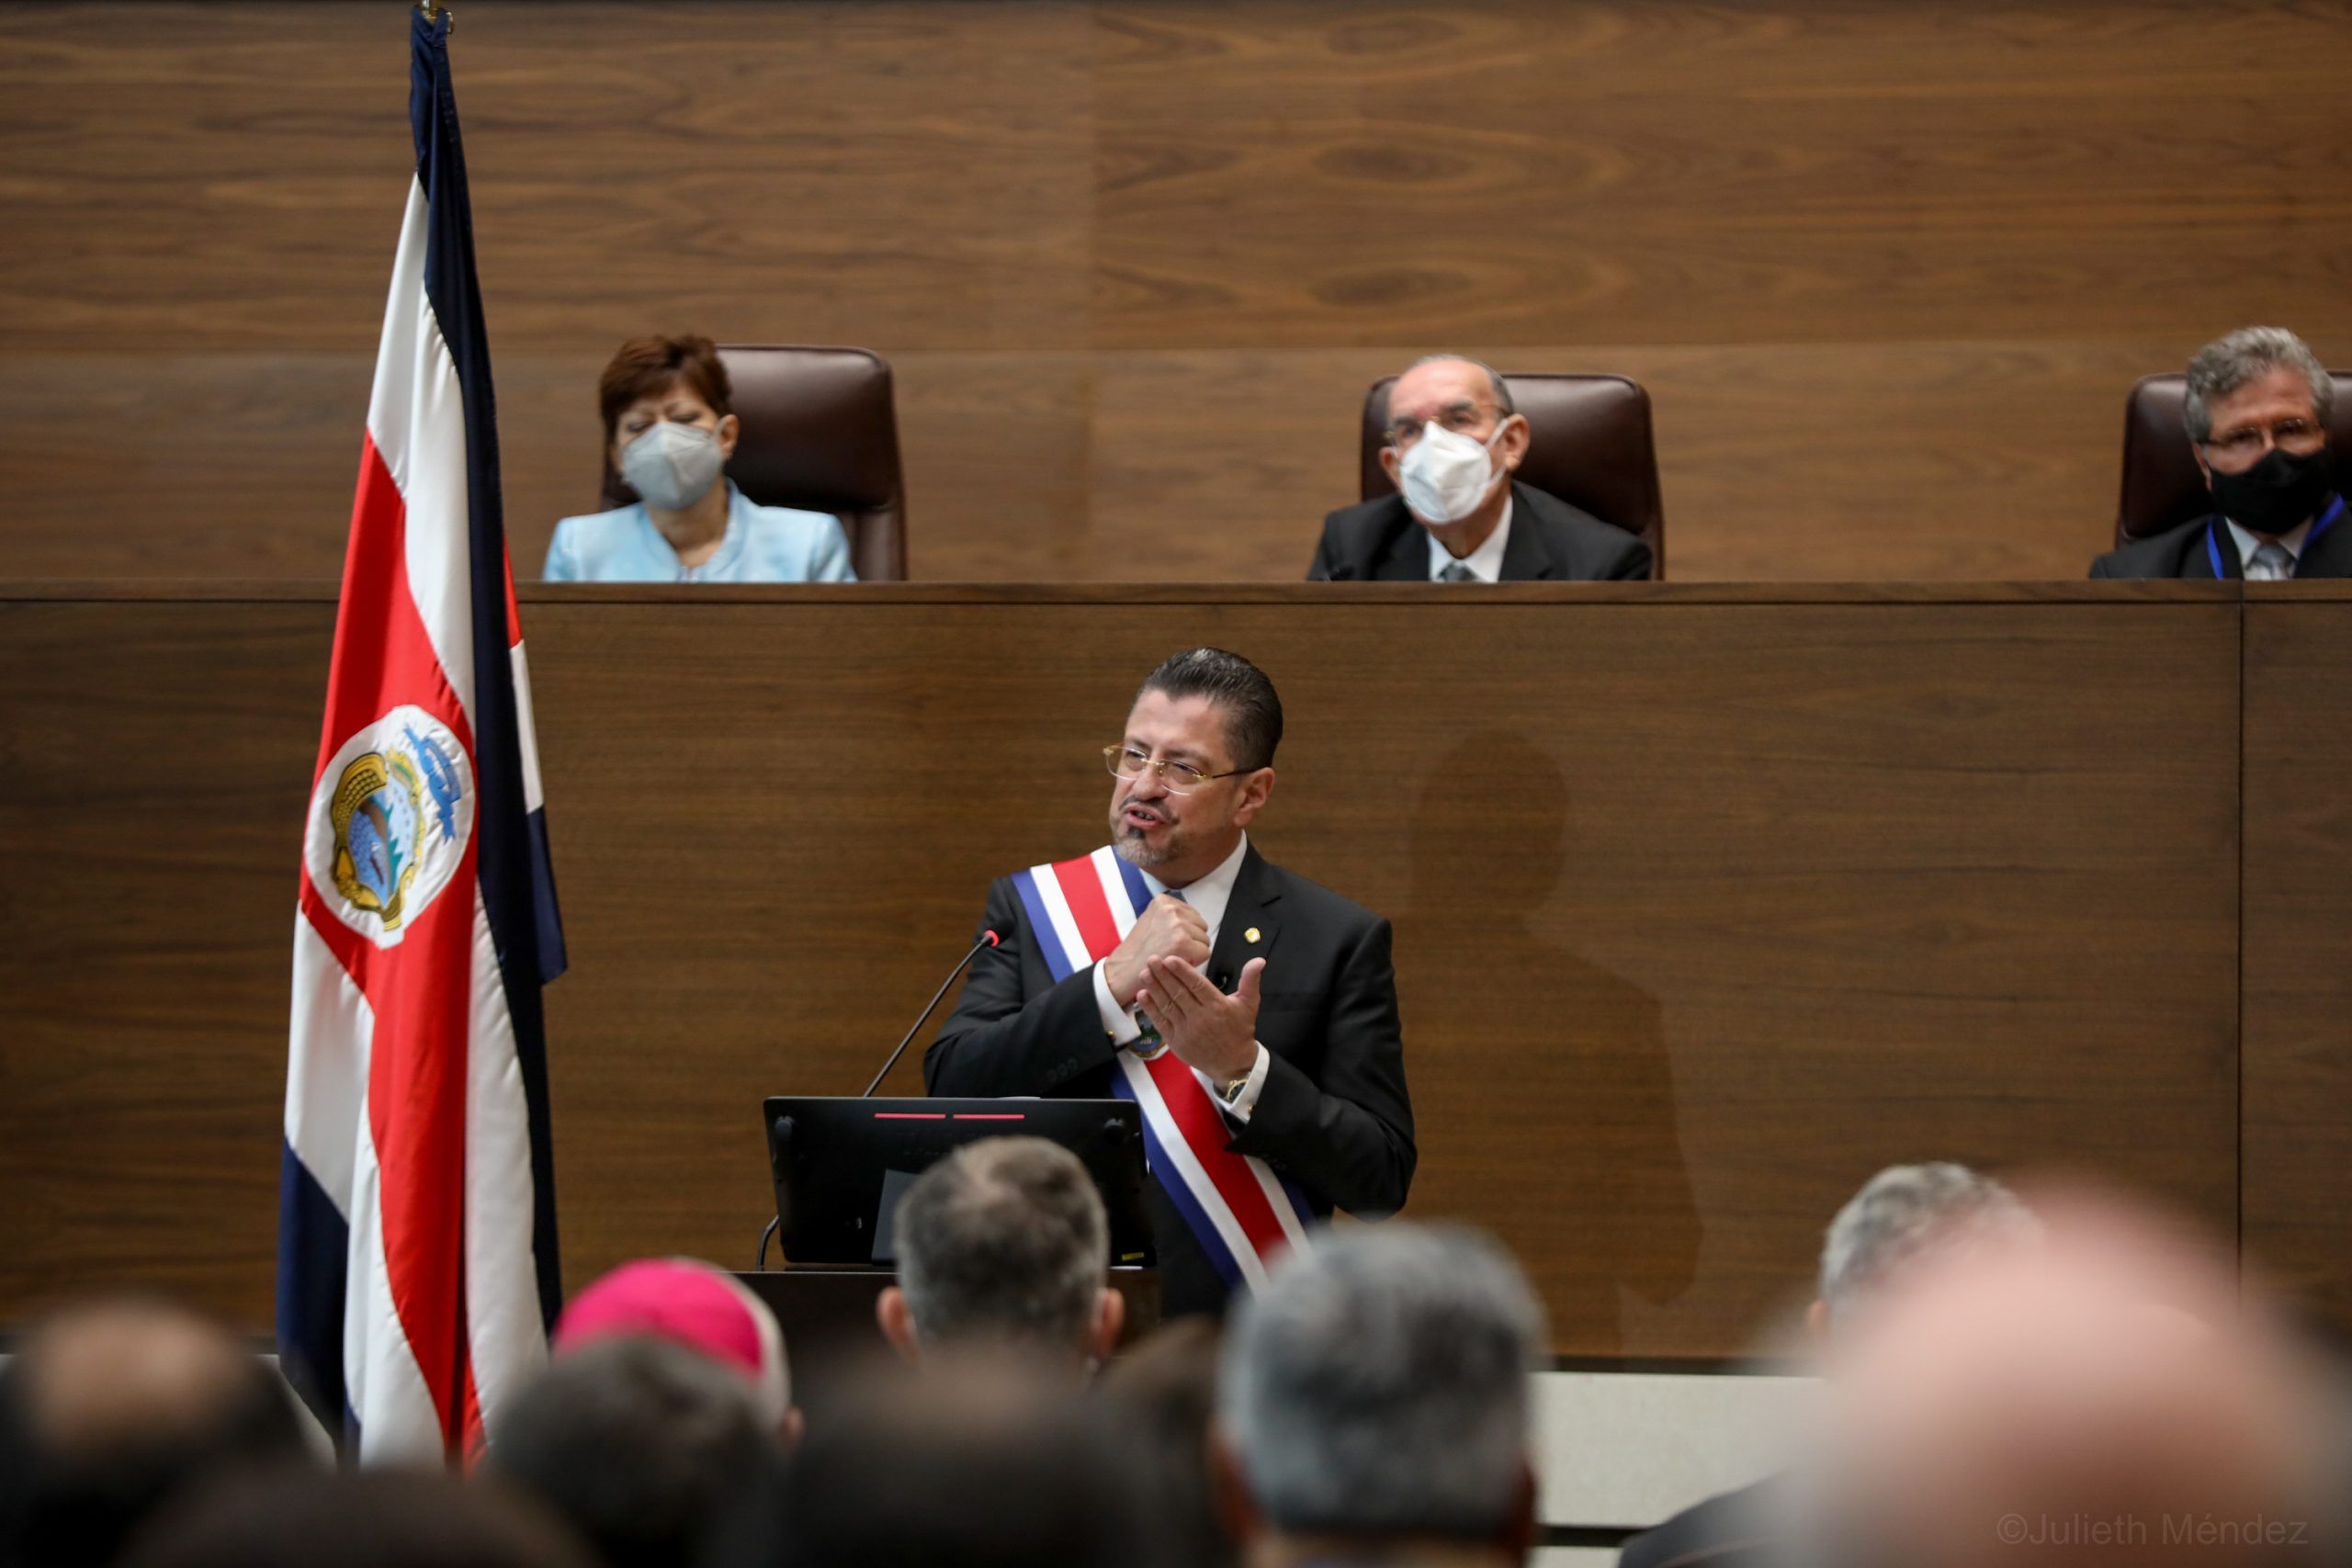 Discurso del Presidente Rodrigo Chaves Robles Asamblea Legislativa Administracion 2022 2026 Foto Julieth Mendez 8 5 2022 5 1 scaled